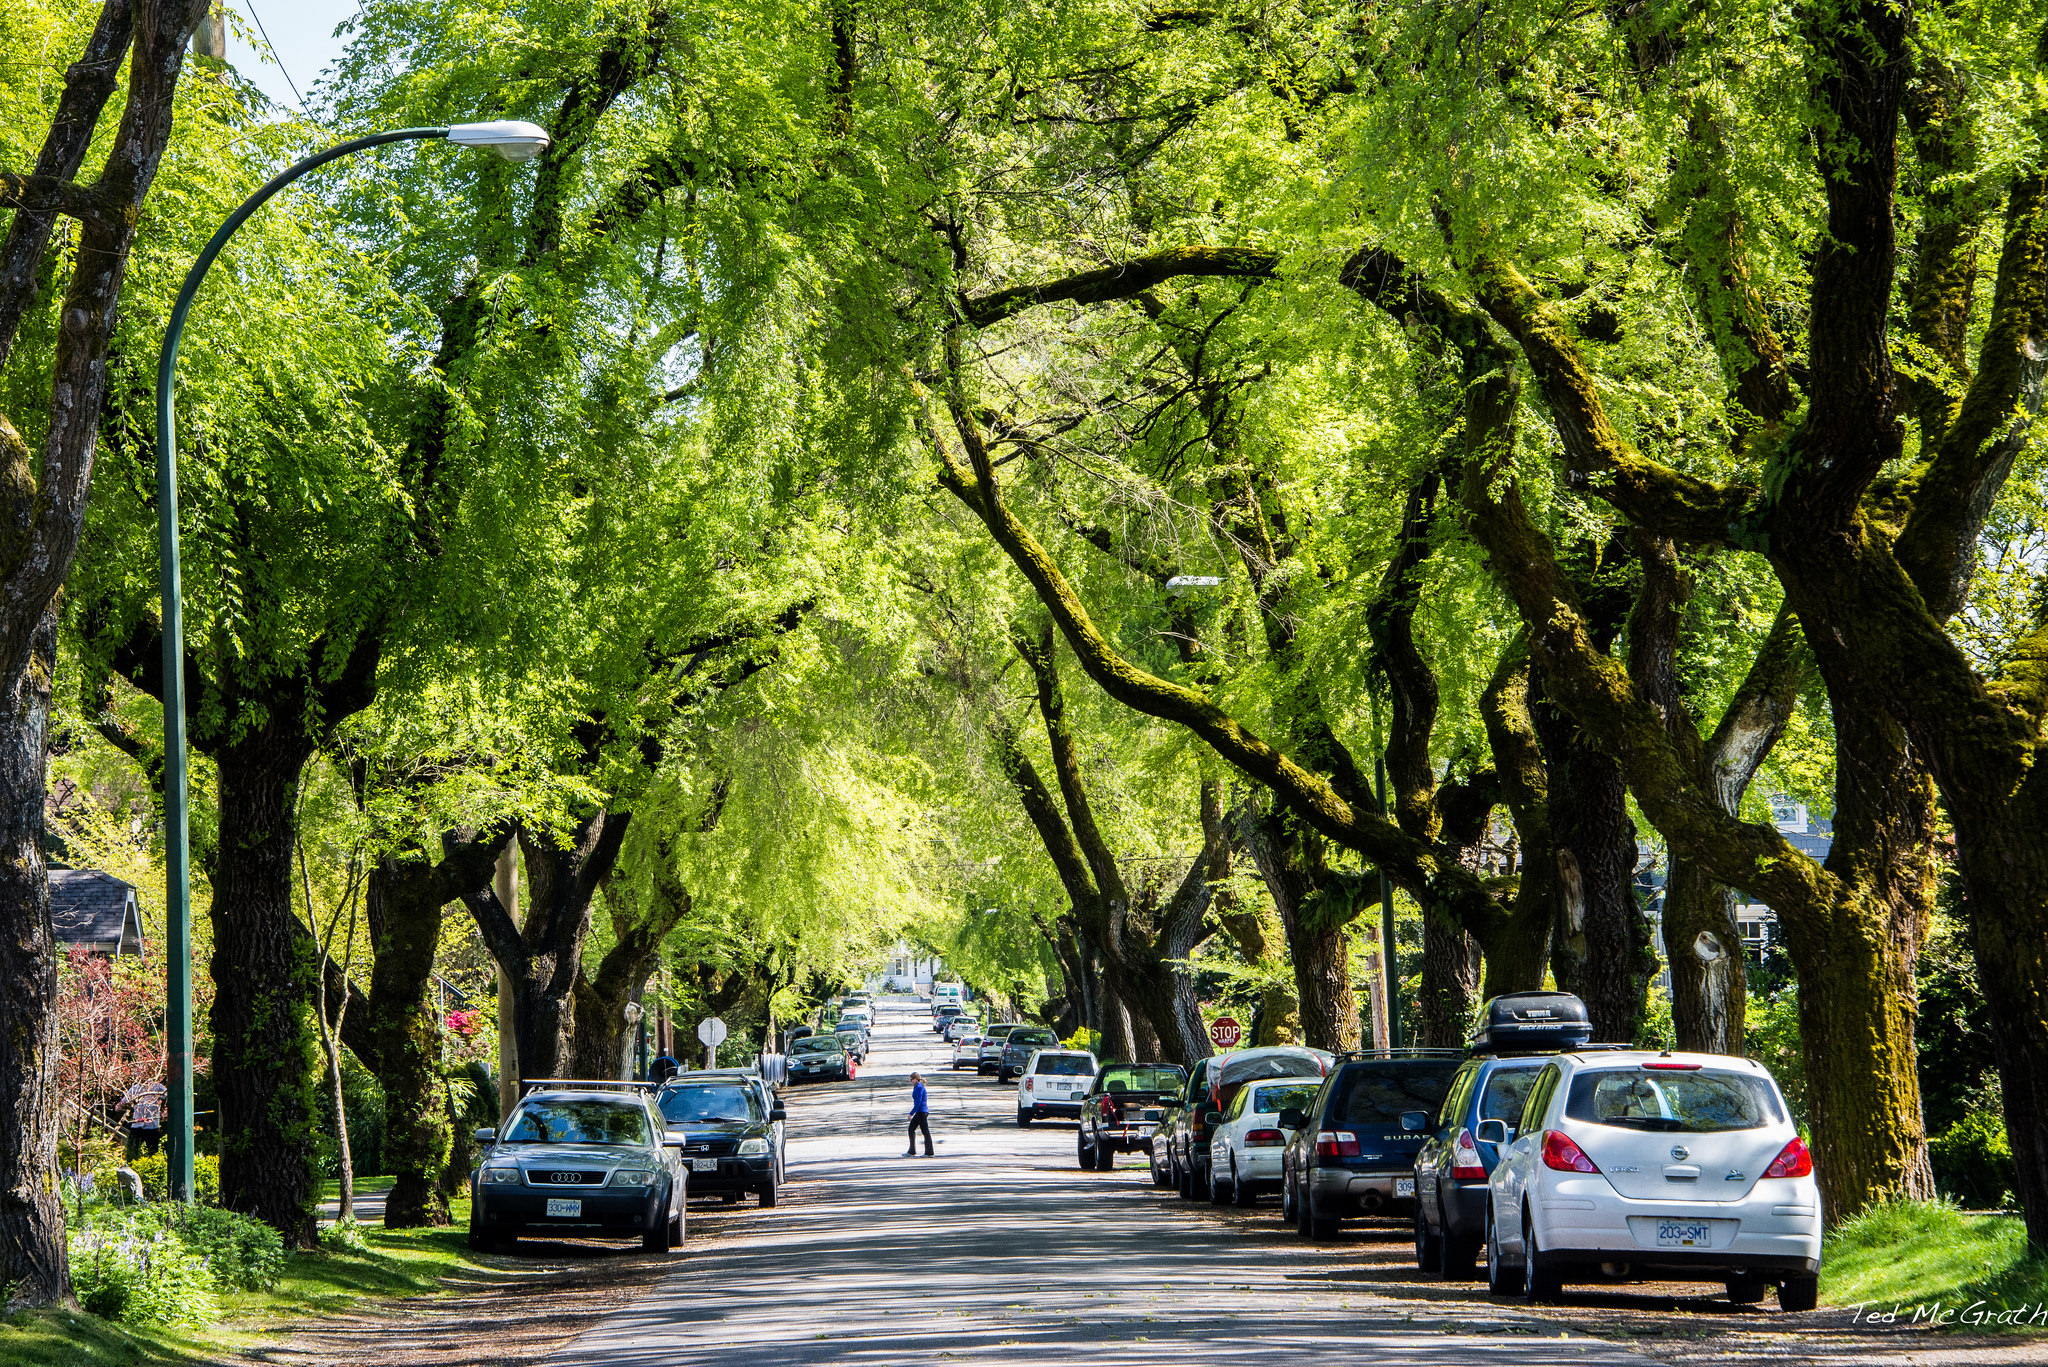 Street trees. Ванкувер зеленый город. Деревья в городе. Улица с деревьями. Улица с деревьями Америка.